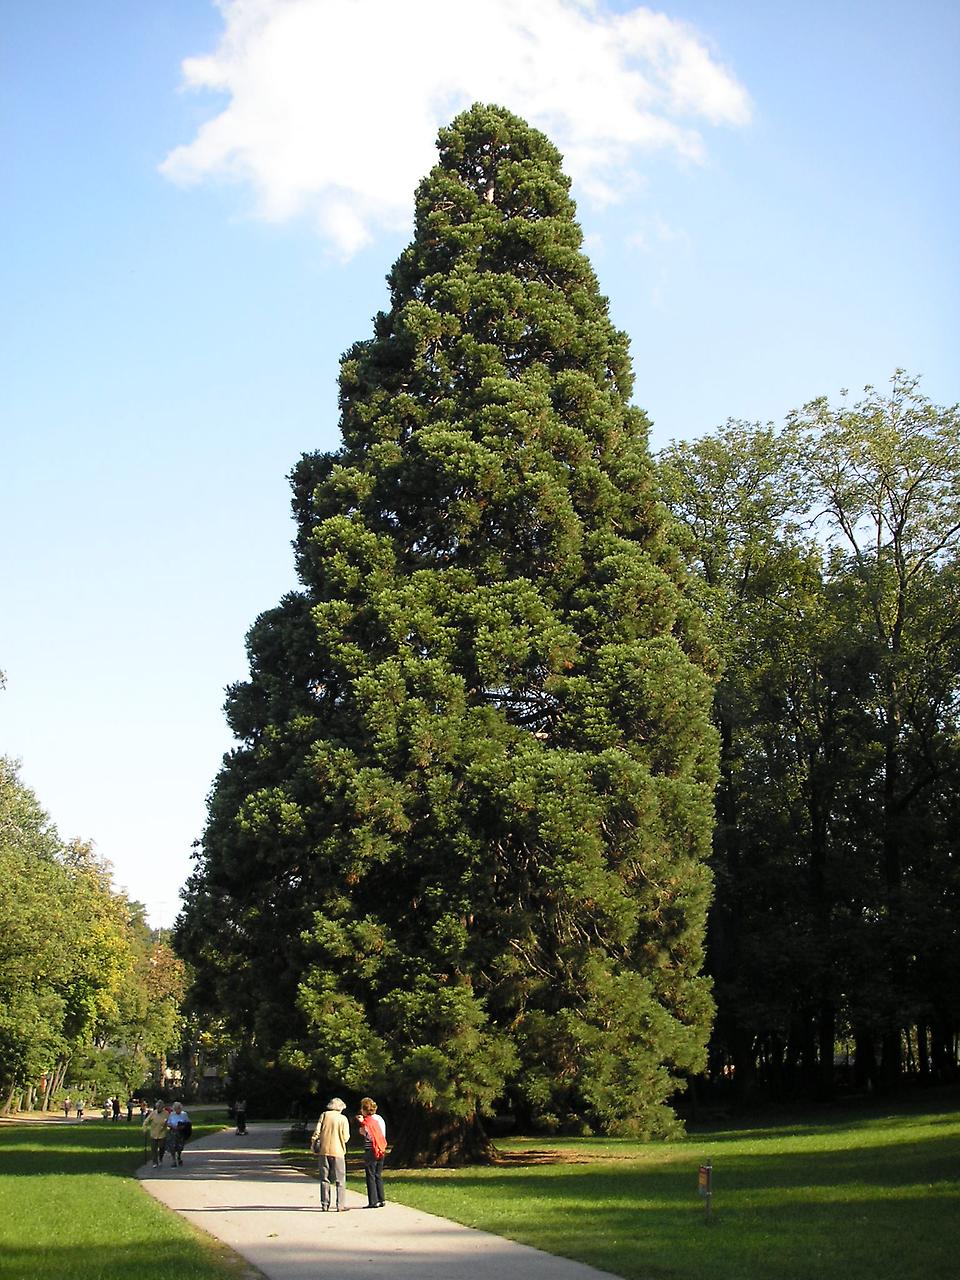 Секвойя. Дерево — гигант (21 фото)